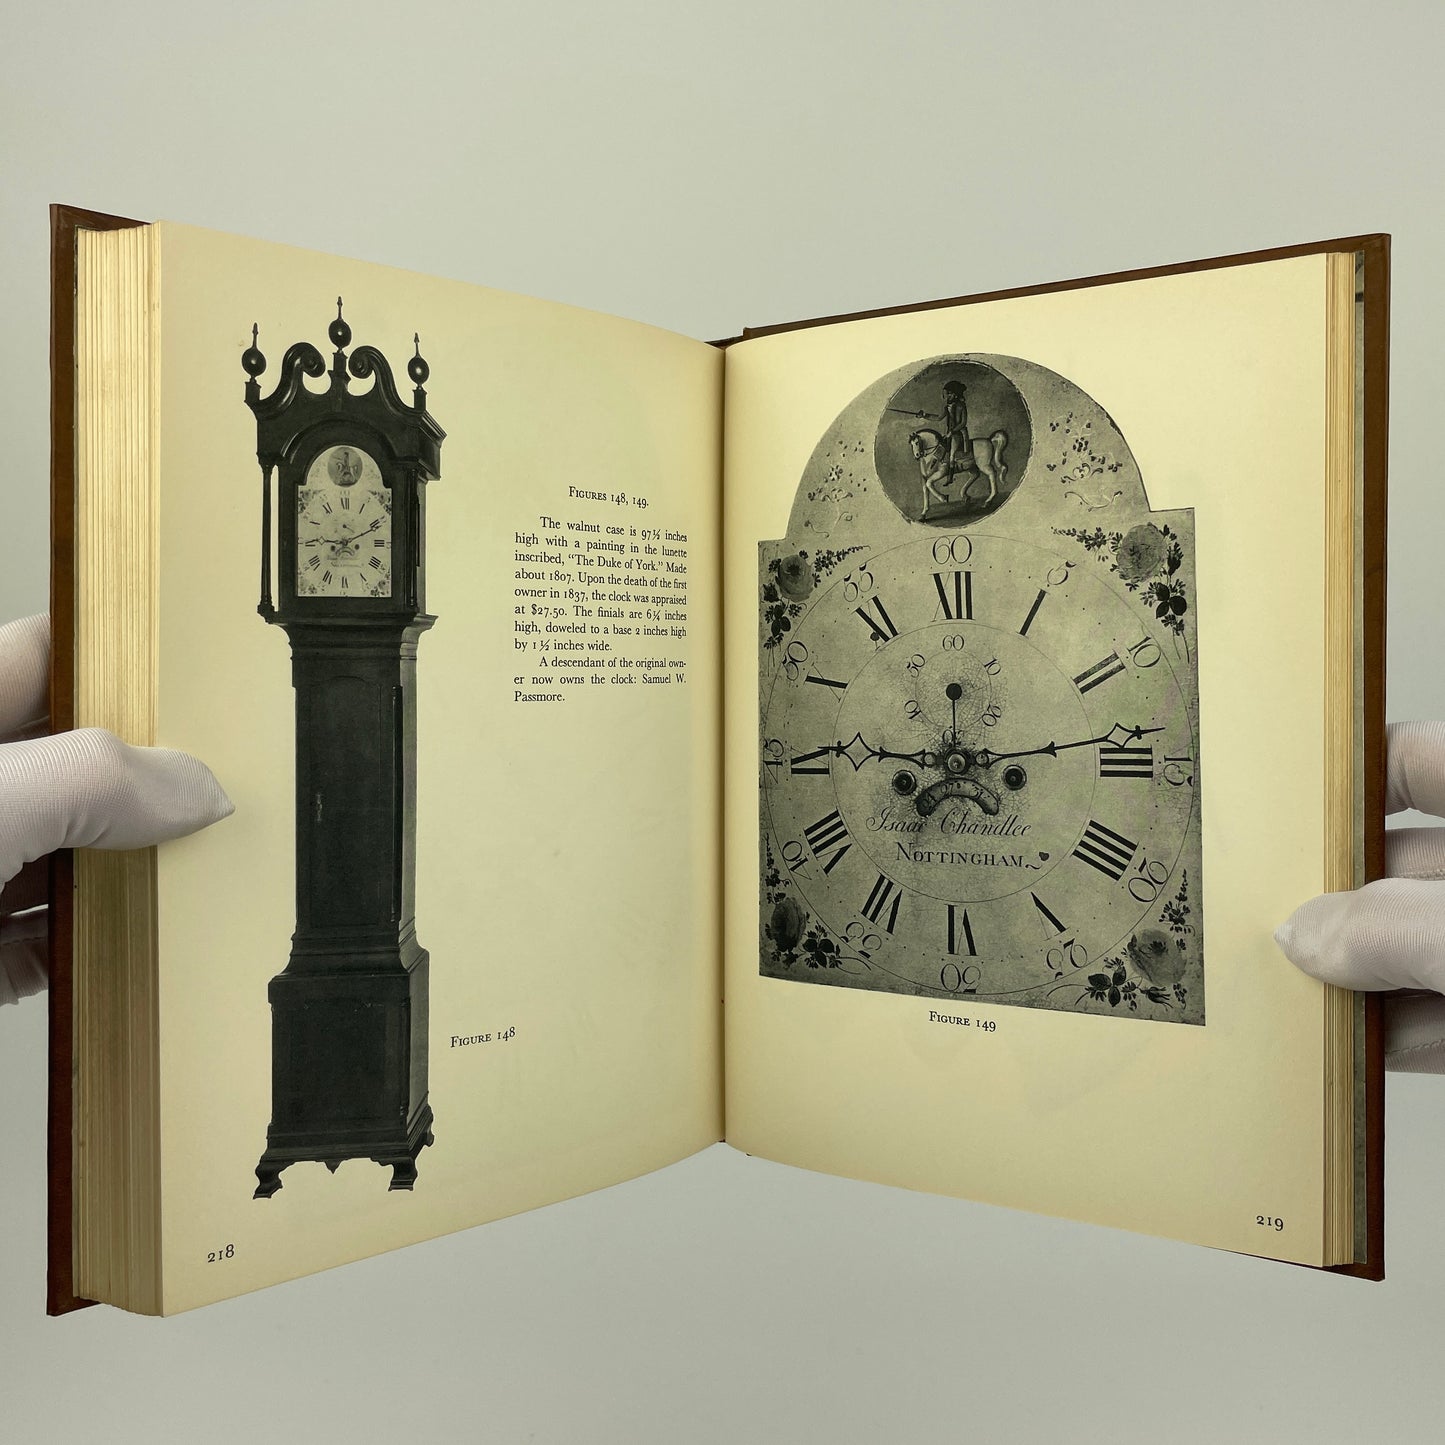 Six Quaker Clockmakers (1682-1813)